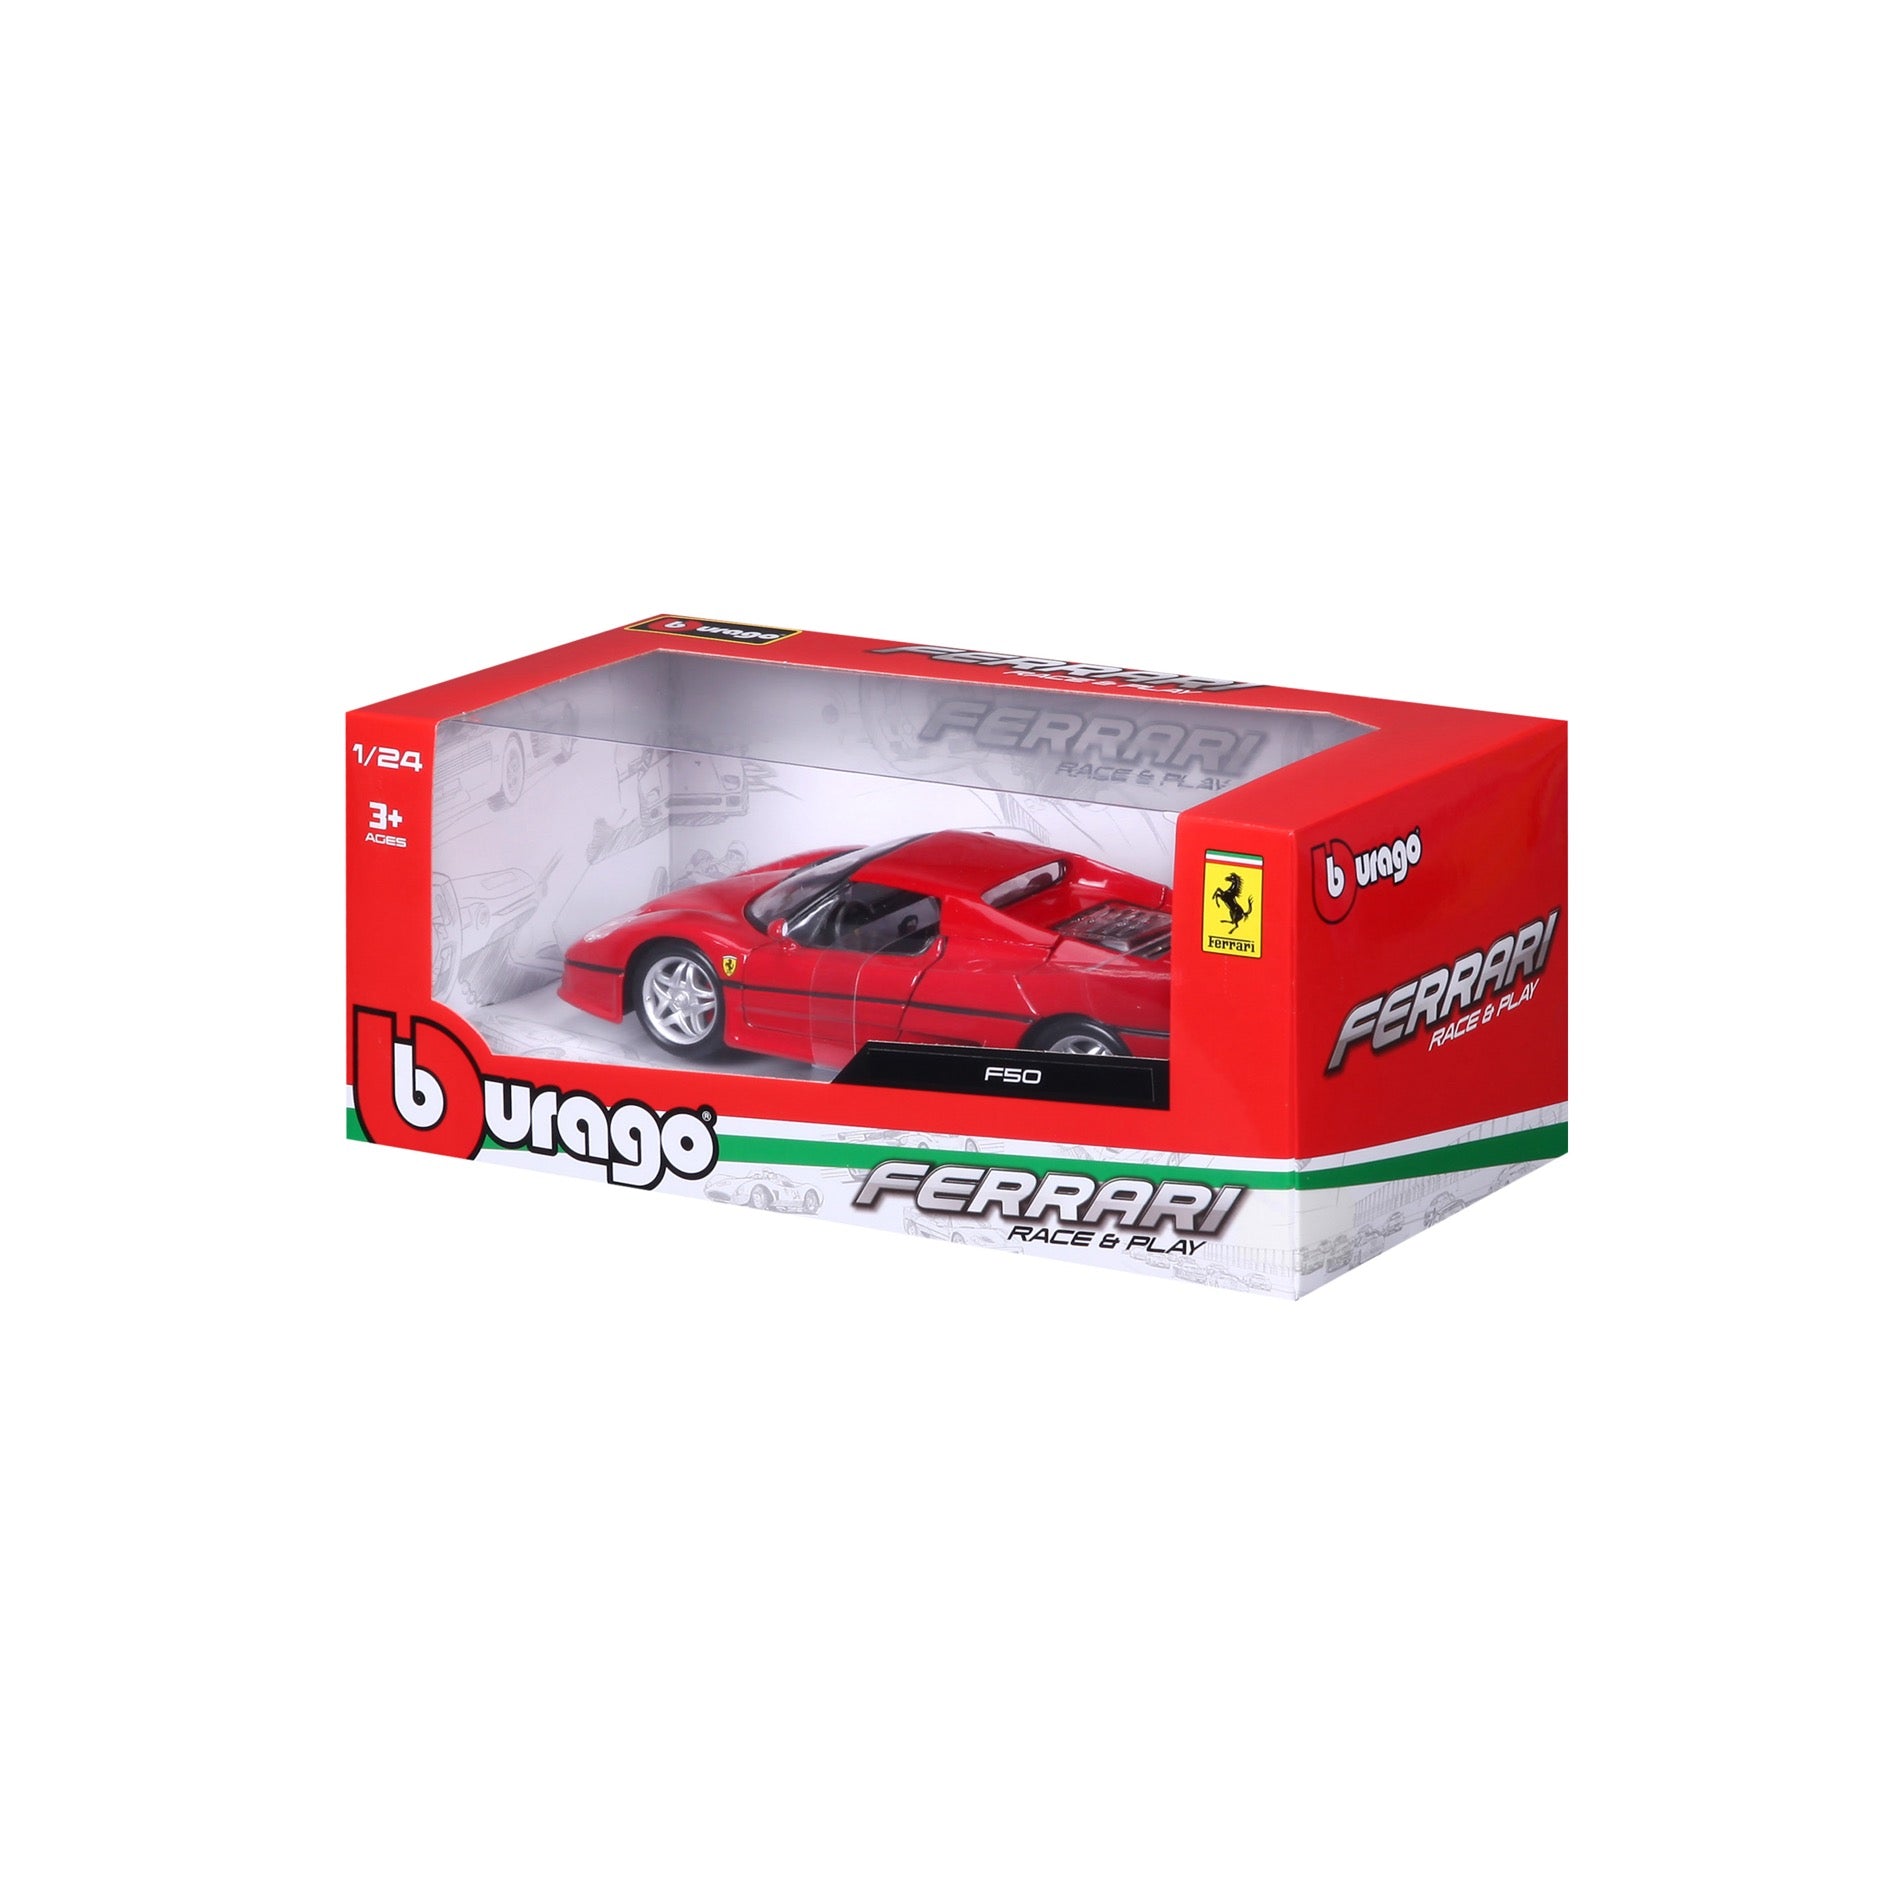 18-21076 GY - Bburago - 1:24 - Porsche 918 Spyder - Gray met